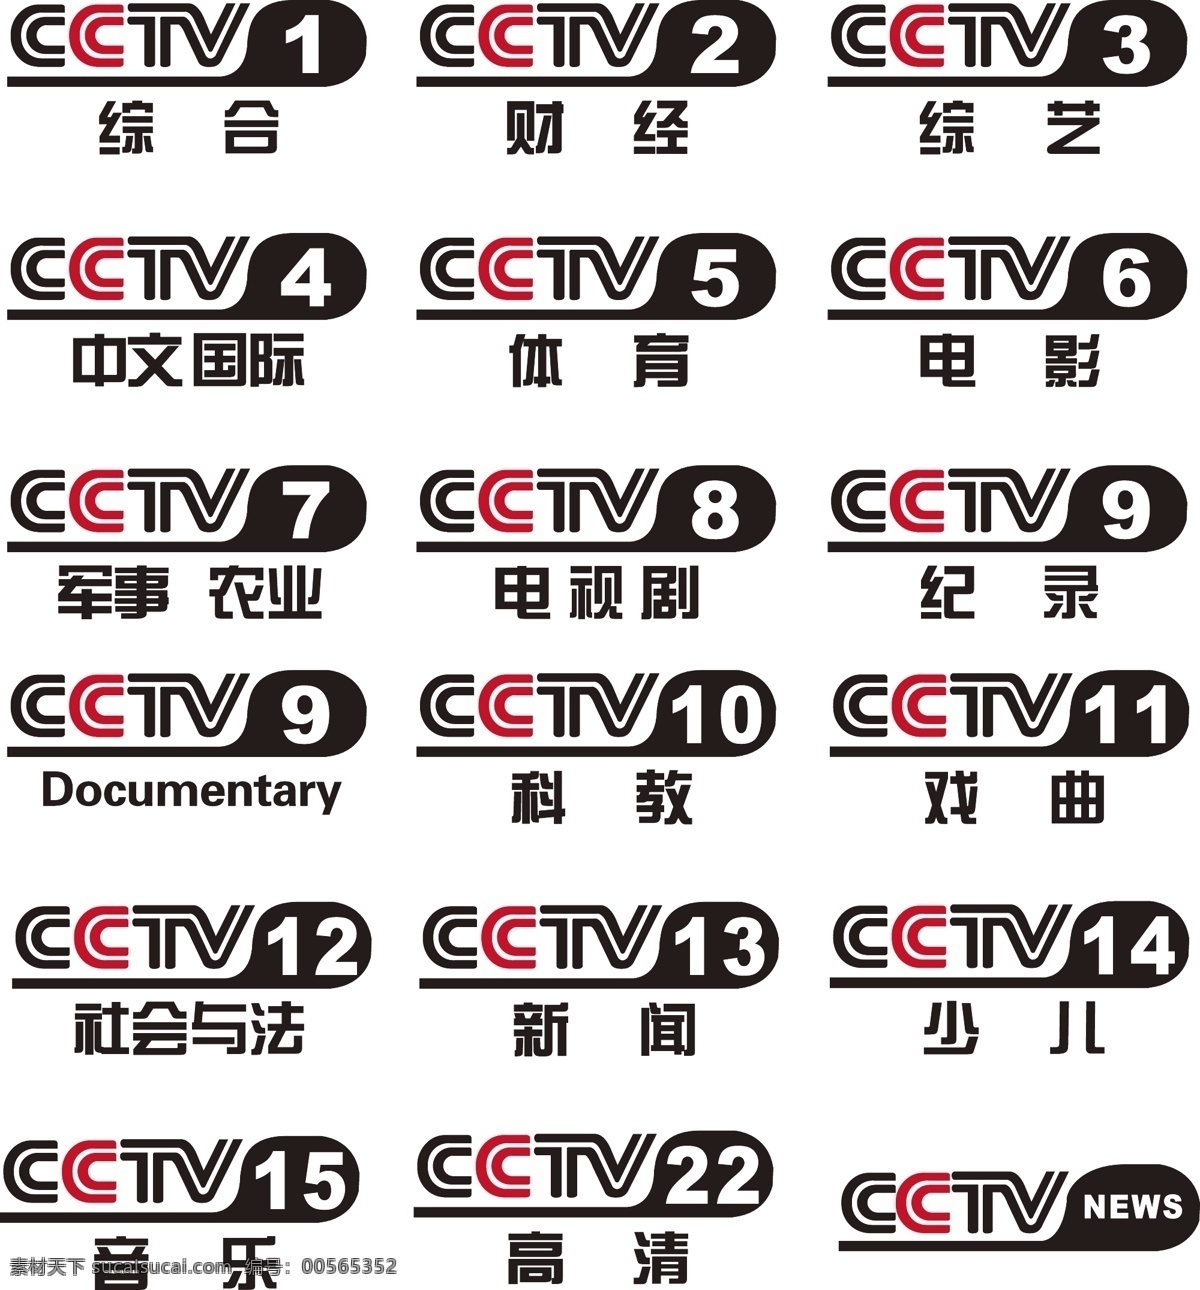 央视台标 央视 台标 矢量 cctv 矢量素材 ai格式 企业 logo 标志 标识标志图标